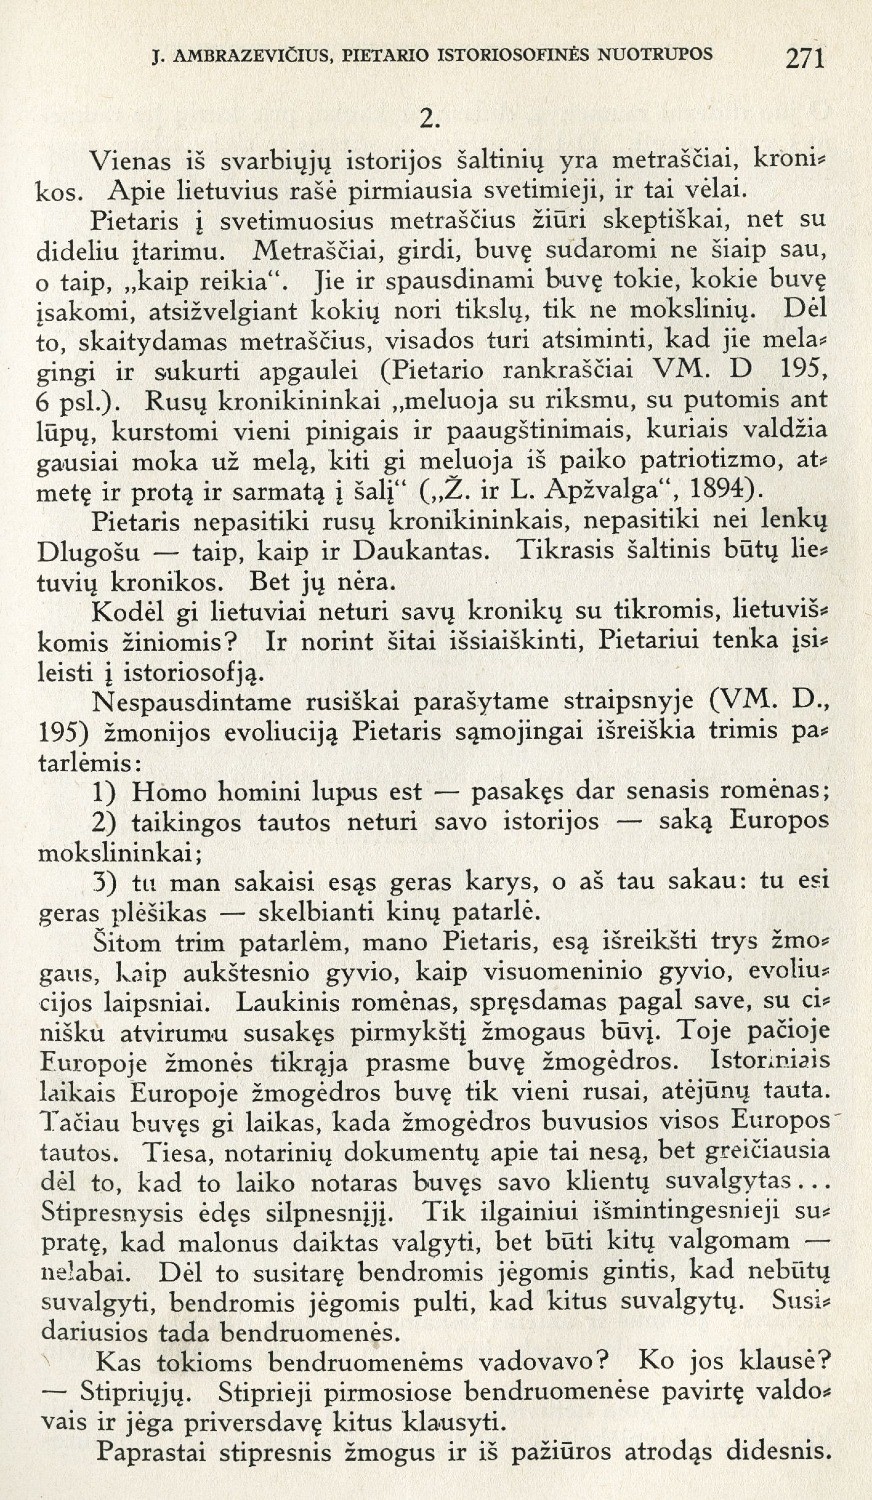 Pietario istoriosofinės nuotrupos: Įvadas į jo „Algimantą“ / J. Ambrazevičius // Židinys. – 1937, Nr. 10, p. 269–277.